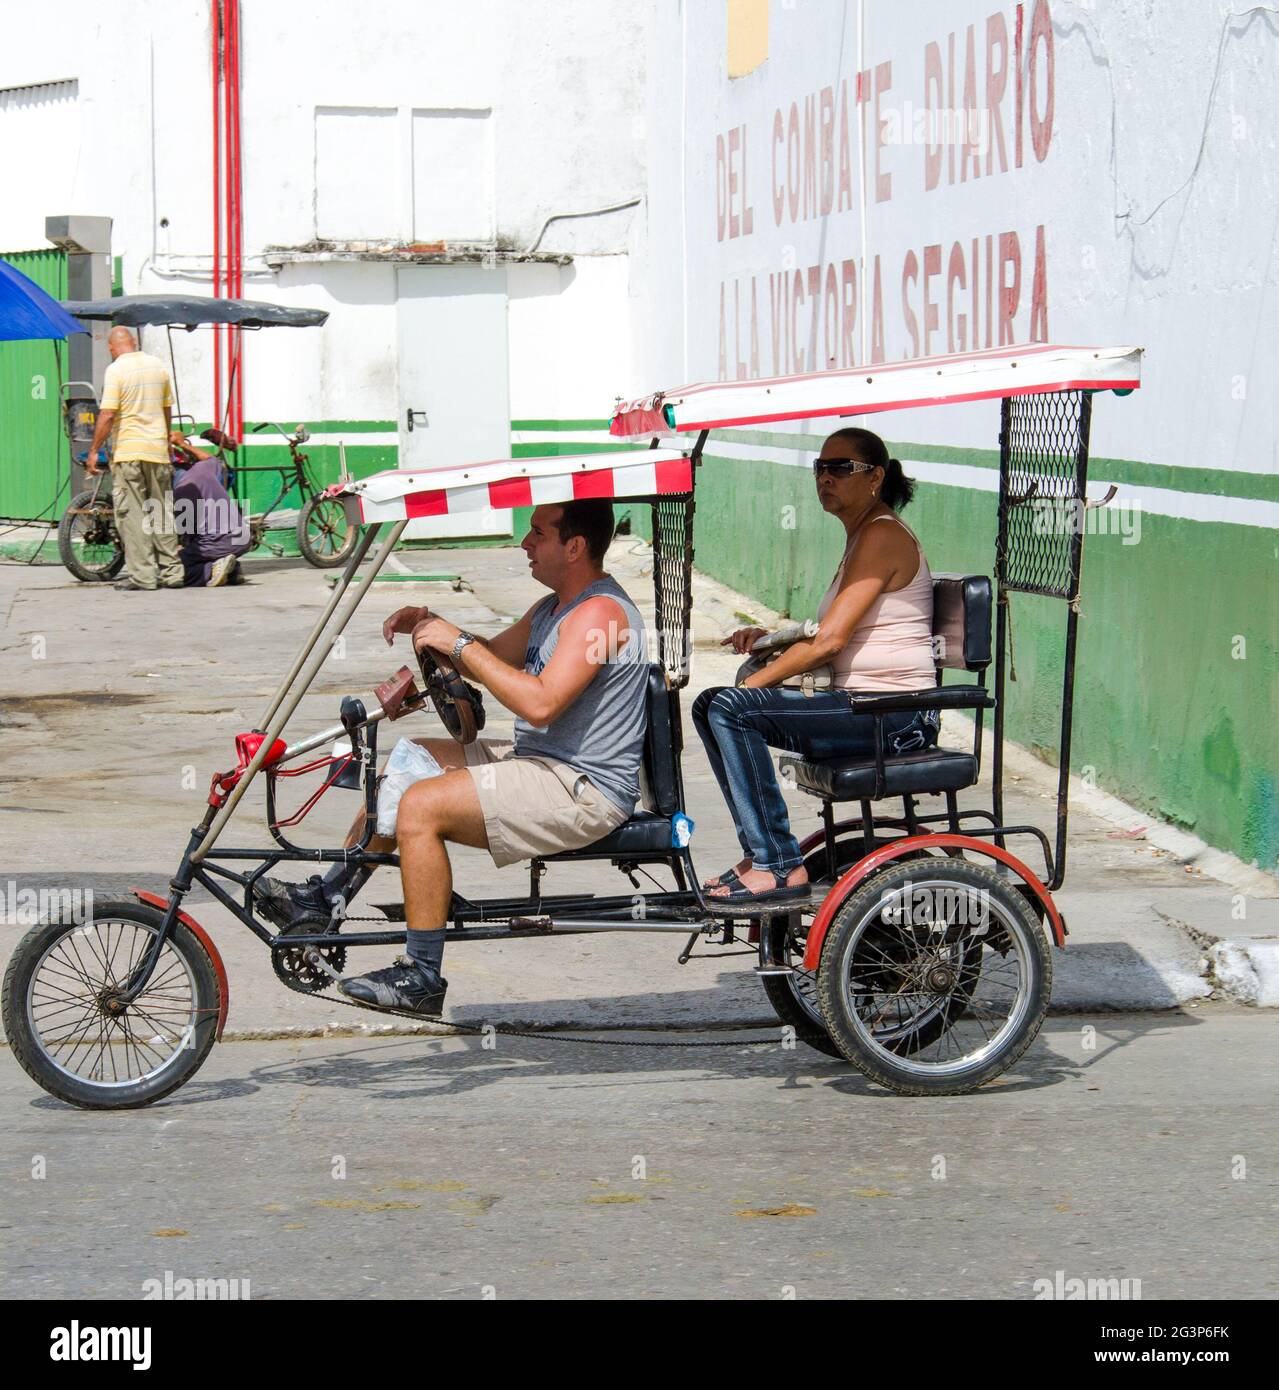 Deux personnes sont en taxi bici ou bicitaxi dans une rue cubaine. L'homme  fait du vélo sous son auvent rayé rouge, portant un débardeur gris, kaki  Photo Stock - Alamy